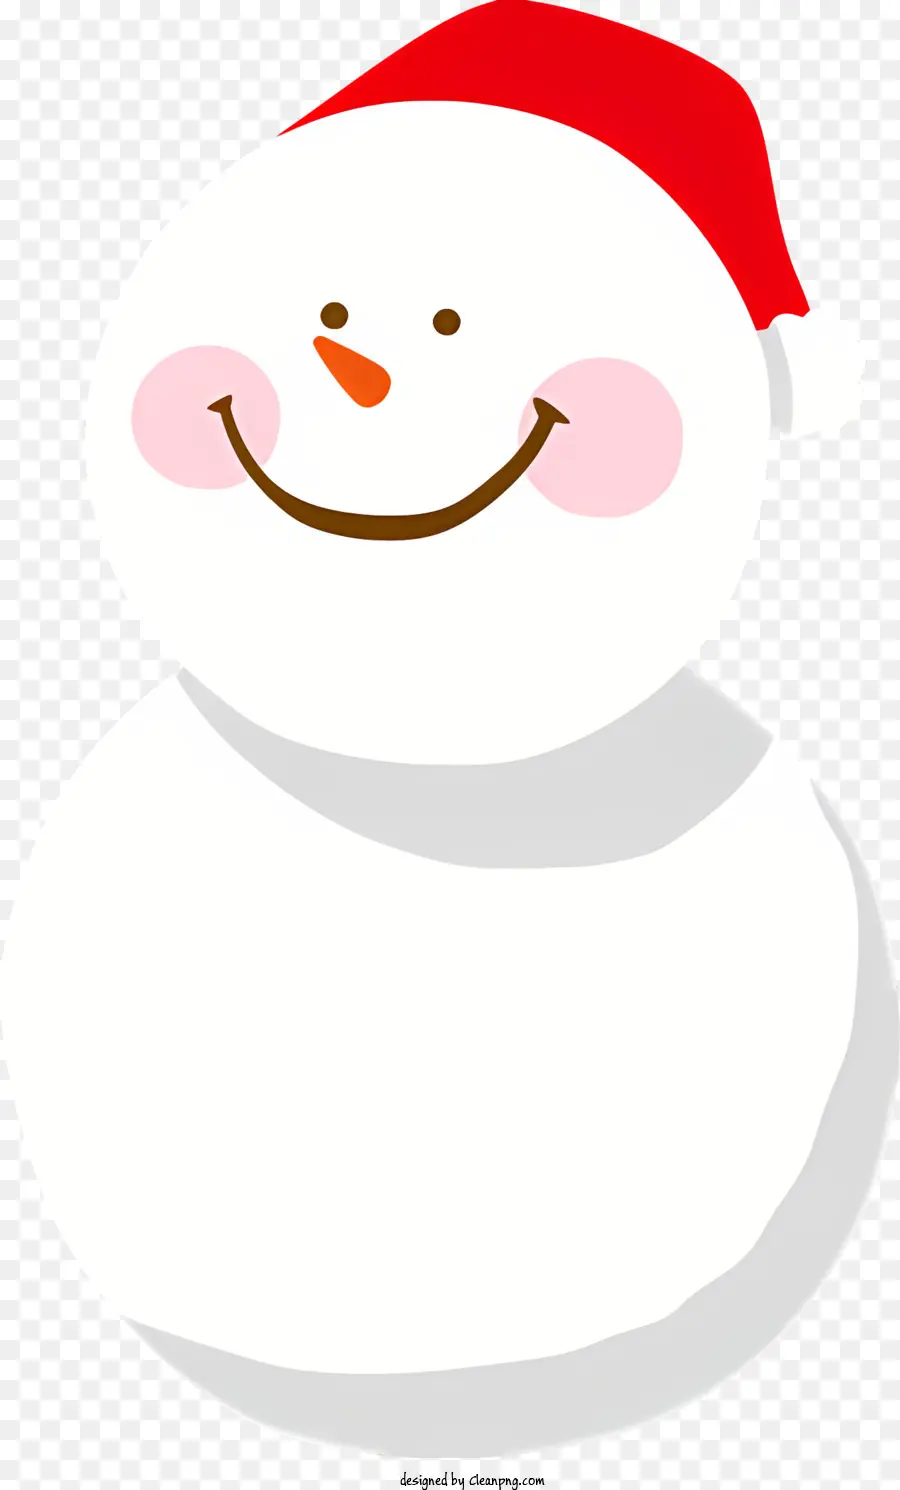 ông già noel chiếc mũ - Người tuyết với mũ ông già Noel và khuôn mặt mỉm cười